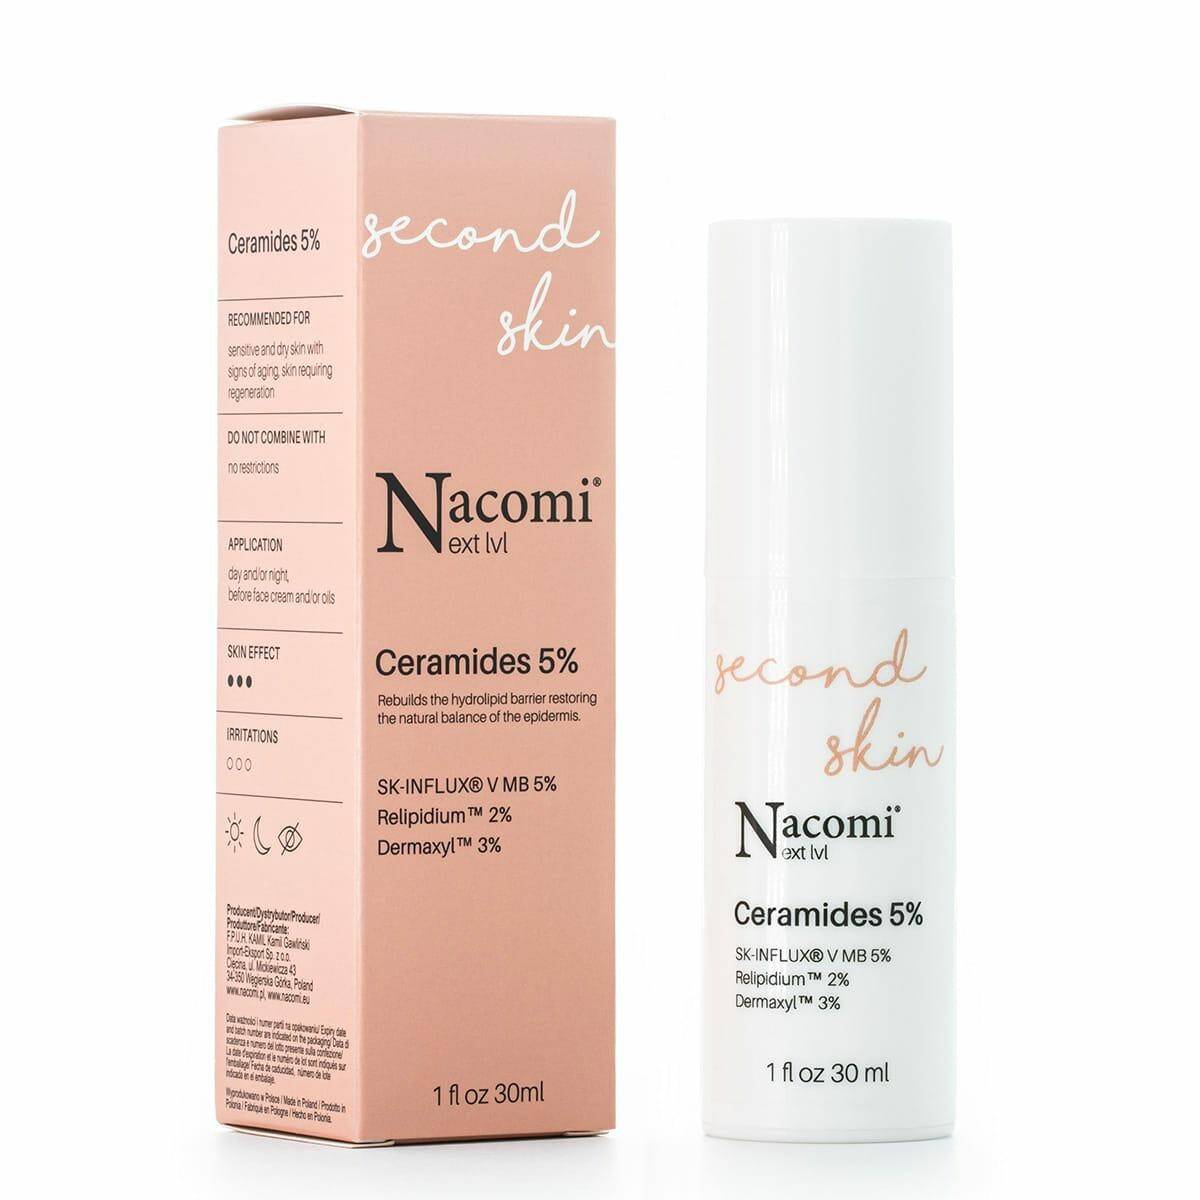 Nacomi next lvl serum Ceramides 5% 30ml